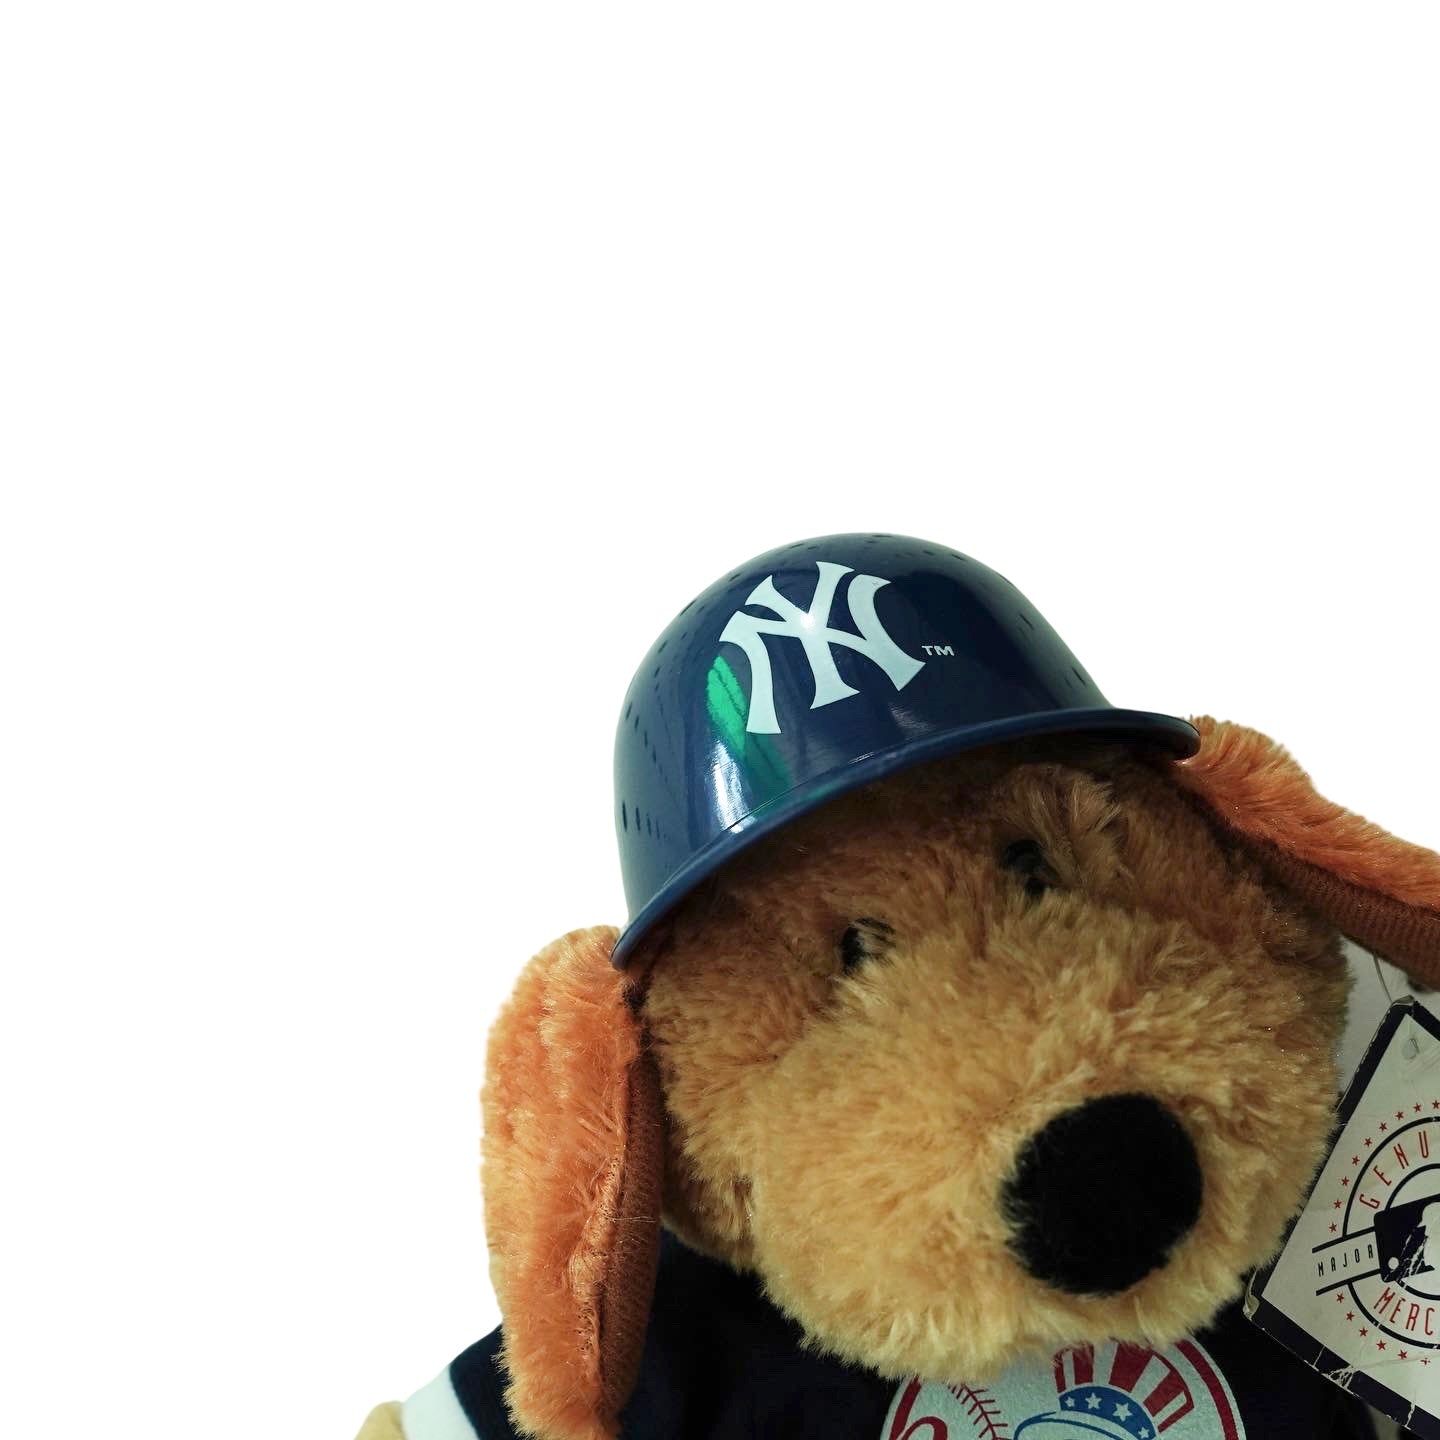 New York Yankees Helmet Bear